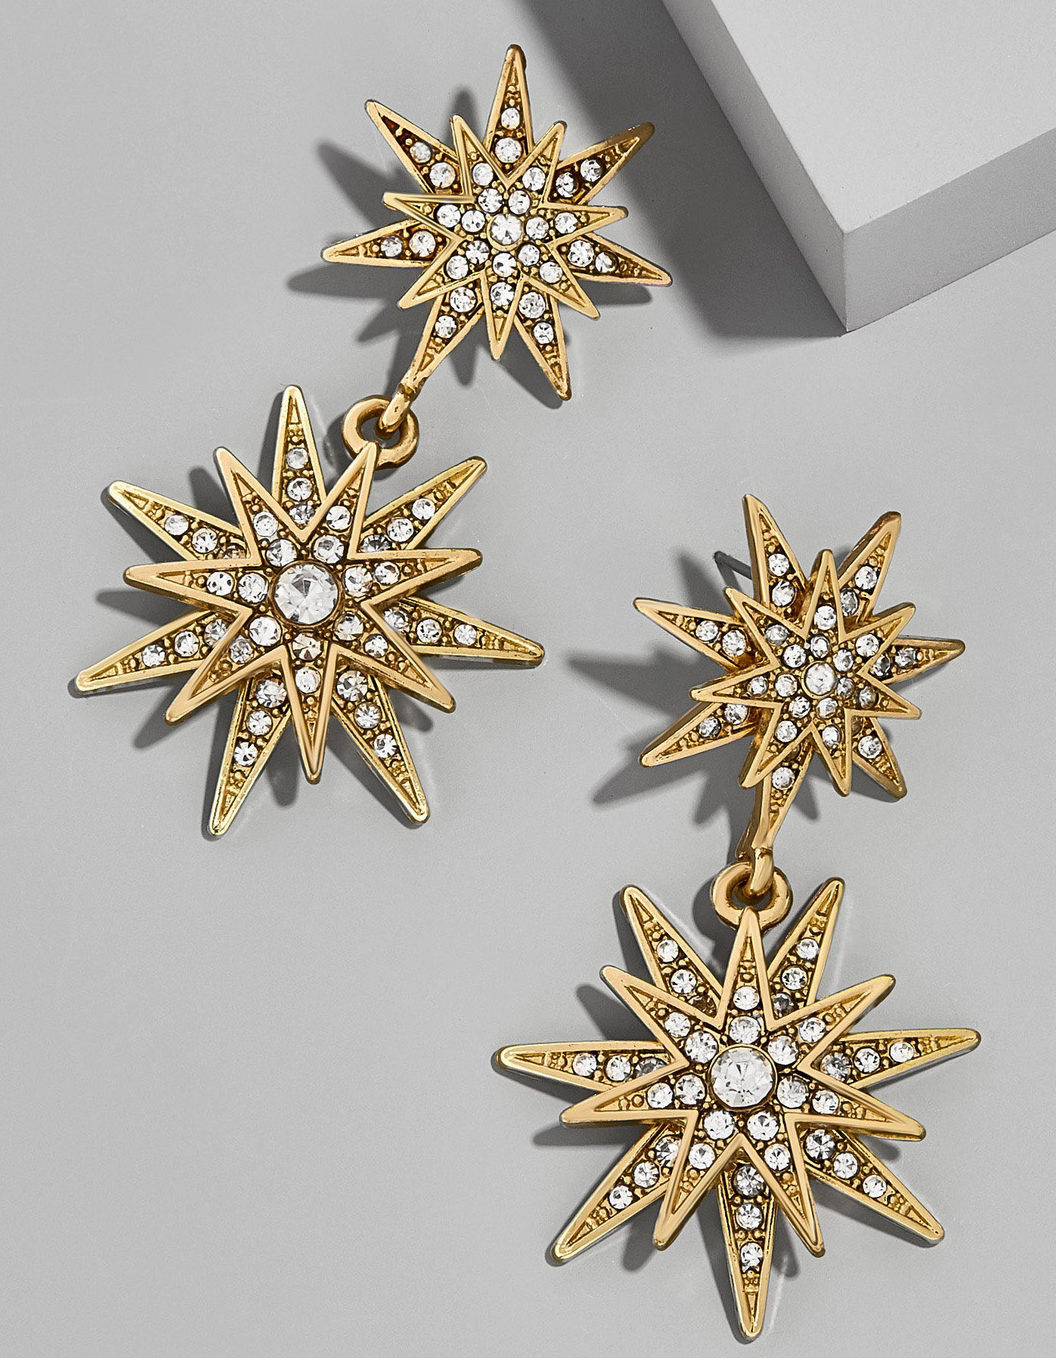 Gold star earrings from BaubleBar